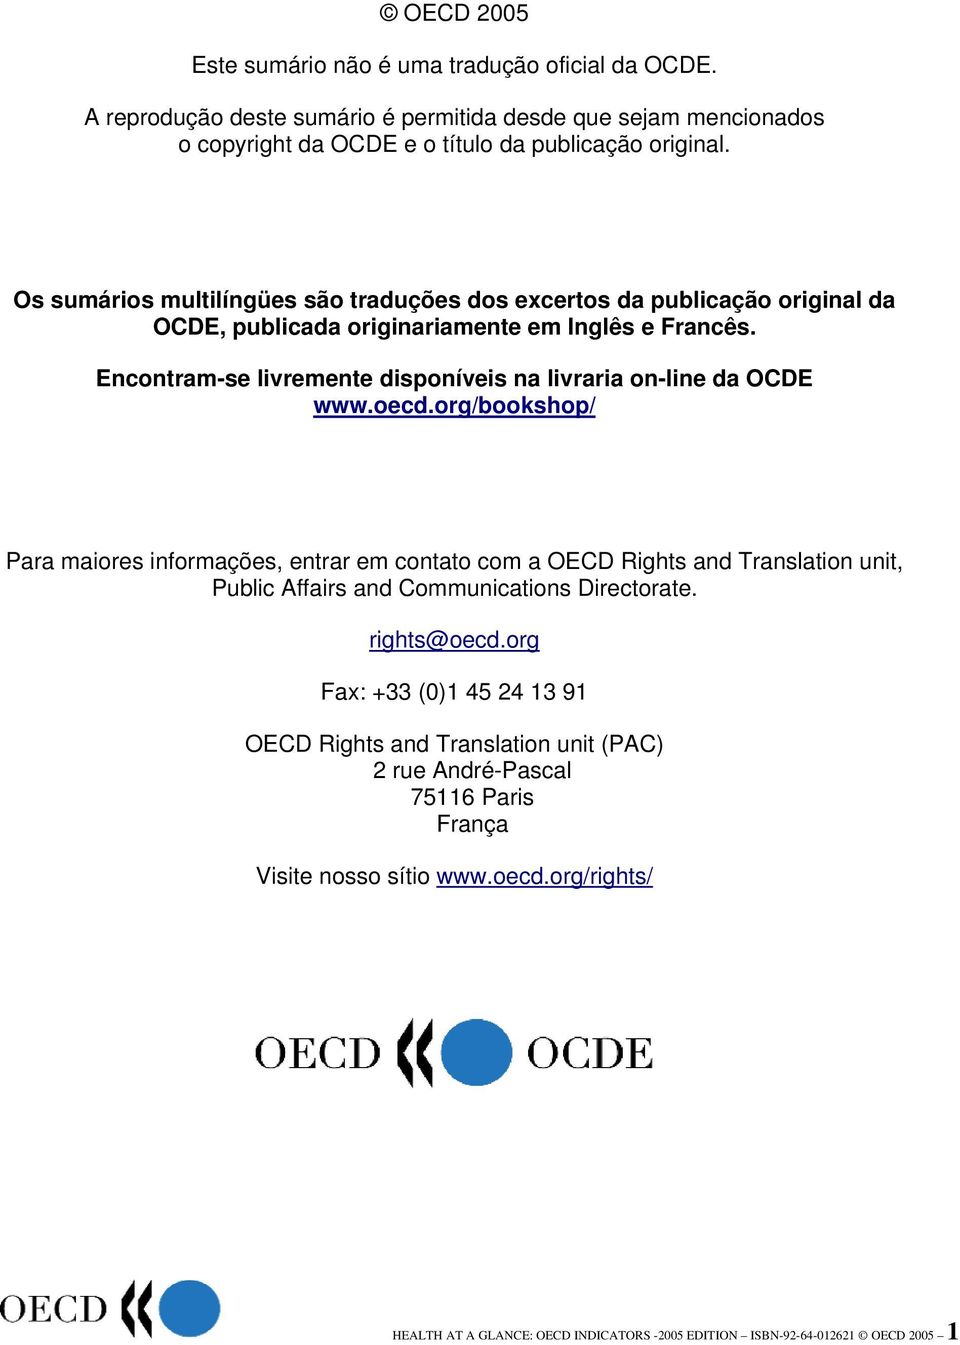 Encontram-se livremente disponíveis na livraria on-line da OCDE www.oecd.